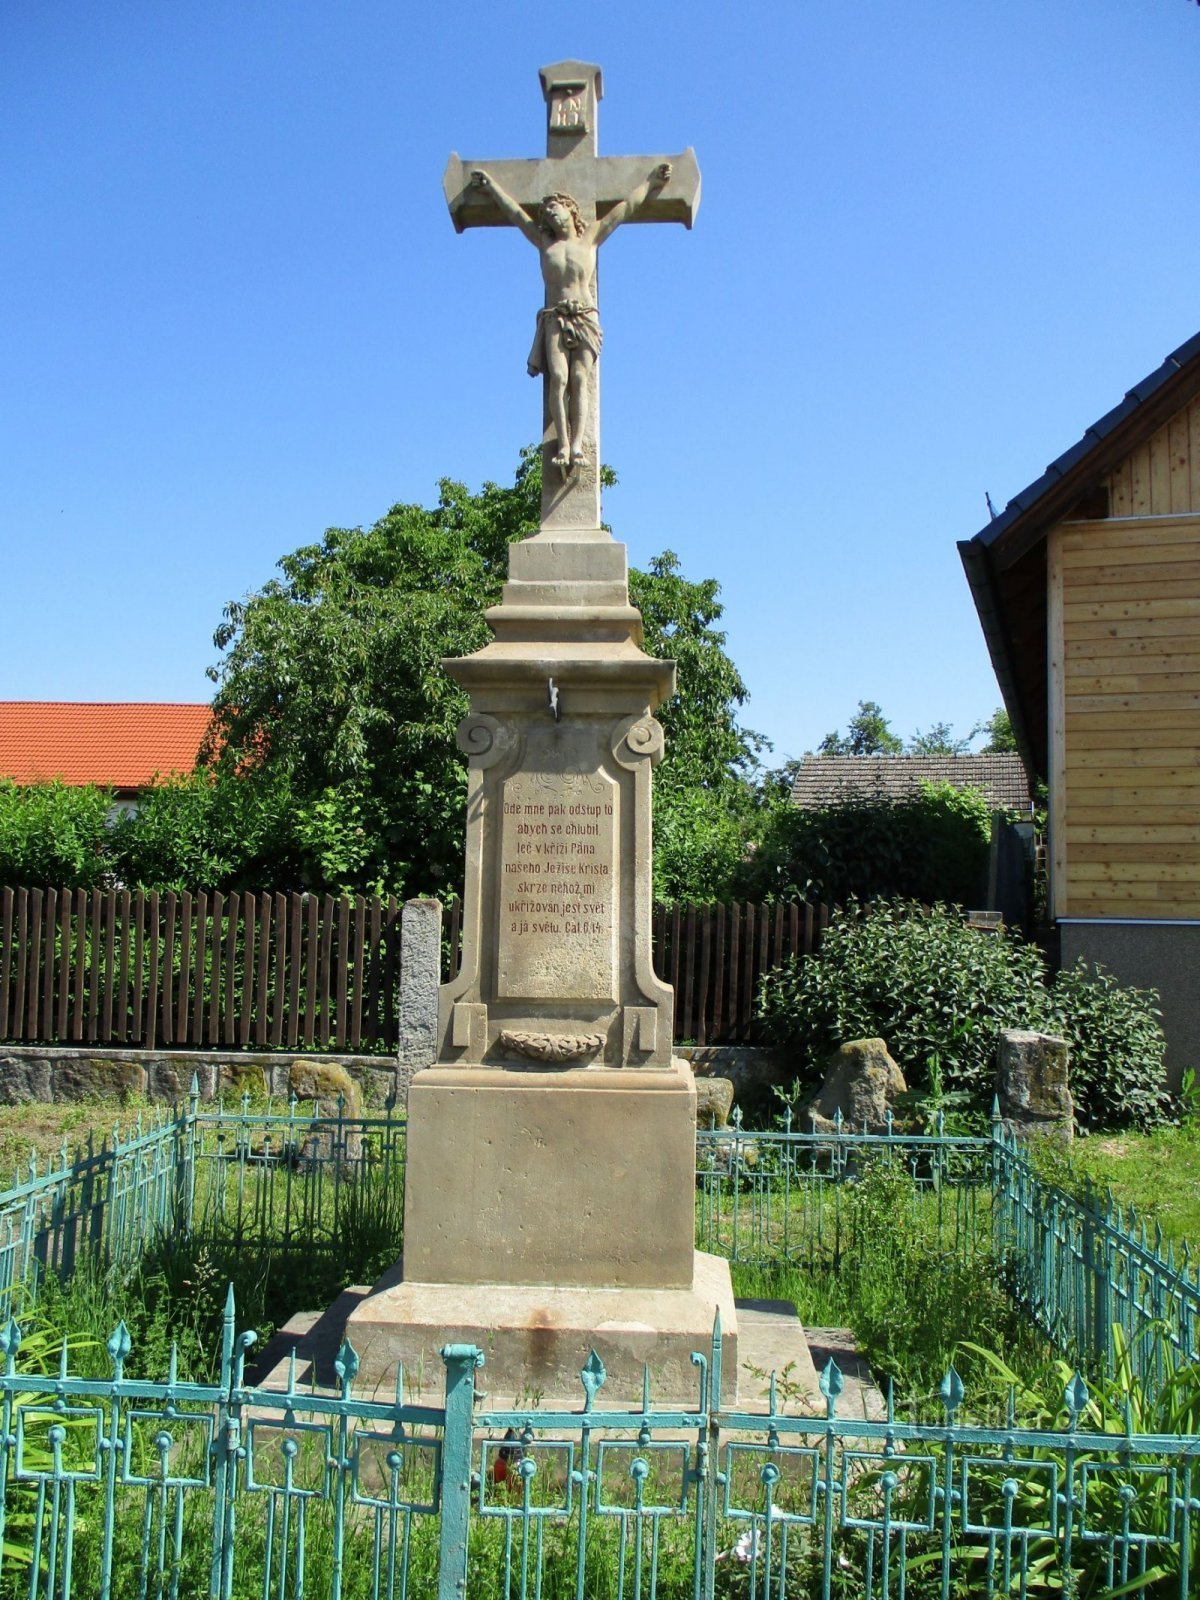 Một cây thánh giá với một nhóm các cây thánh giá hòa giải trong nền (Třebovětice, ngày 4.6.2019 tháng XNUMX năm XNUMX)